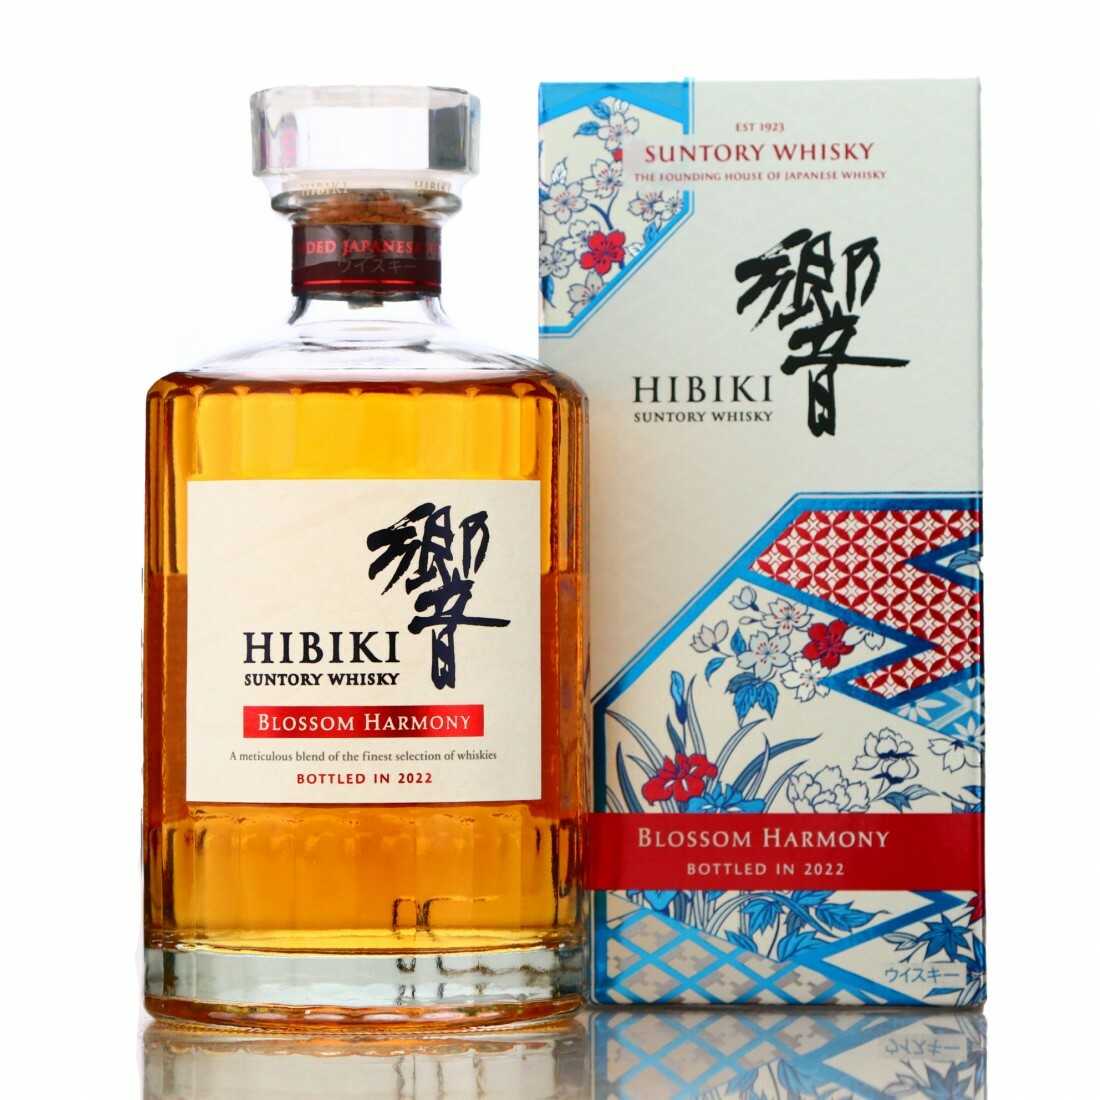 響（HIBIKI）櫻花桶限定版Blossom Harmony 2021 Blended Japanese Whisky